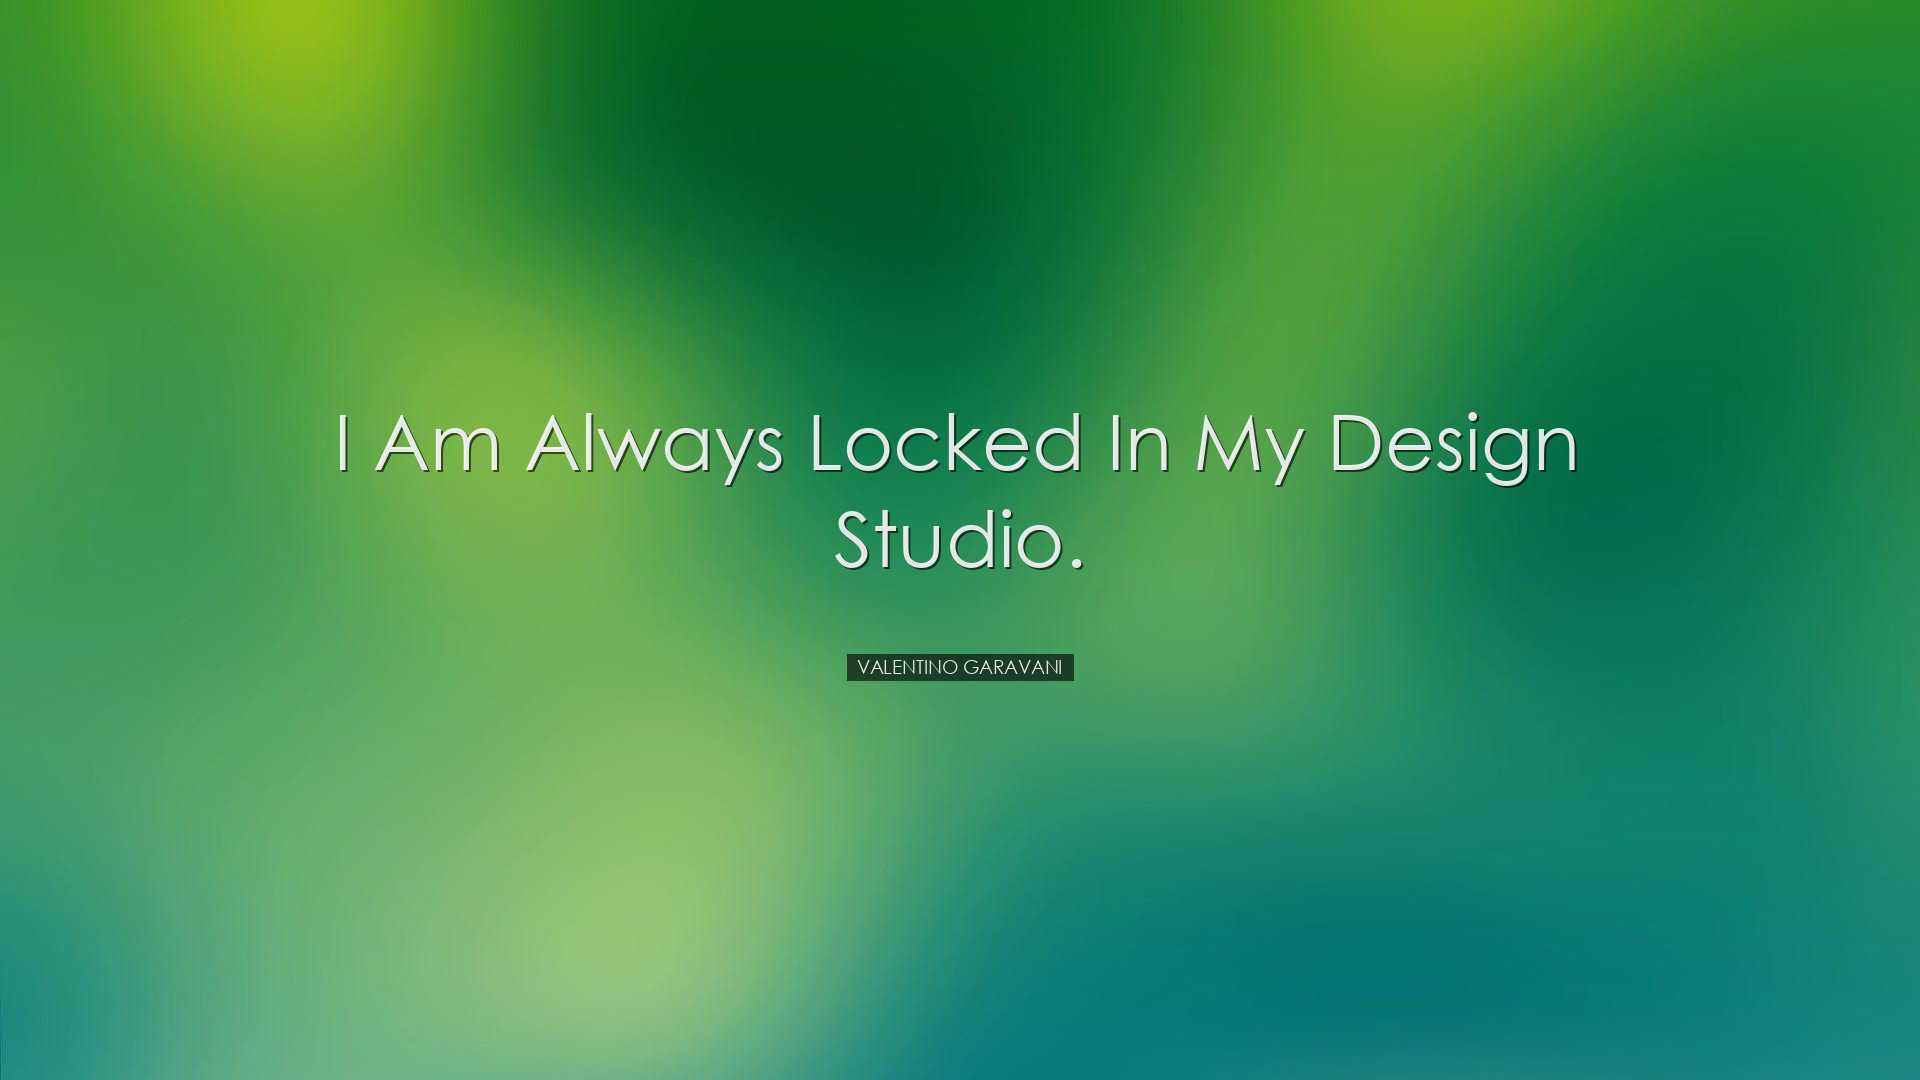 I am always locked in my design studio. - Valentino Garavani